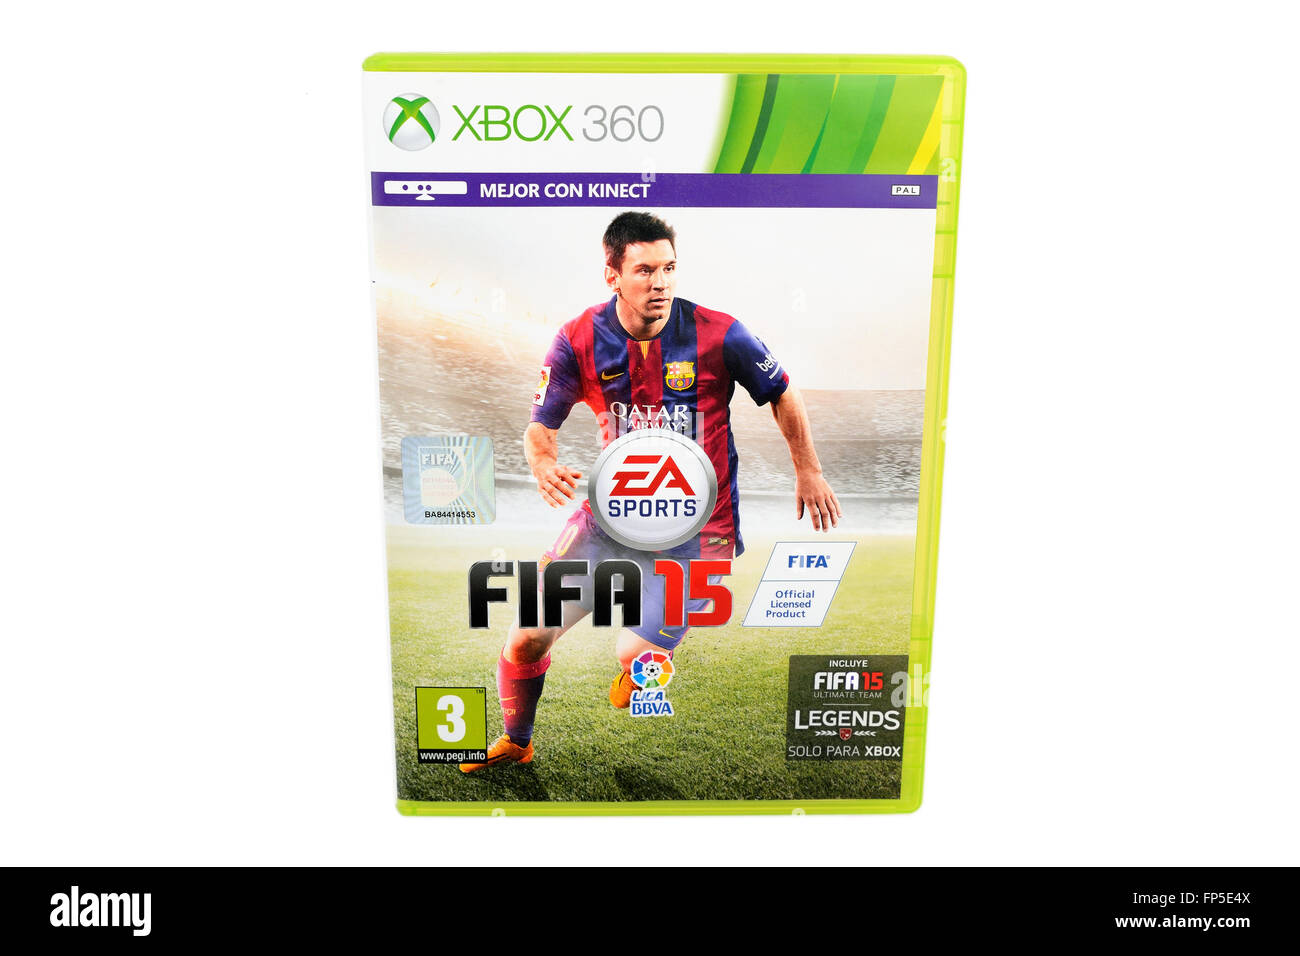 Das berühmte Videospiel FIFA 15, veröffentlicht von Electronic Arts, mit Messi (Spieler) auf dem Cover. Stockfoto